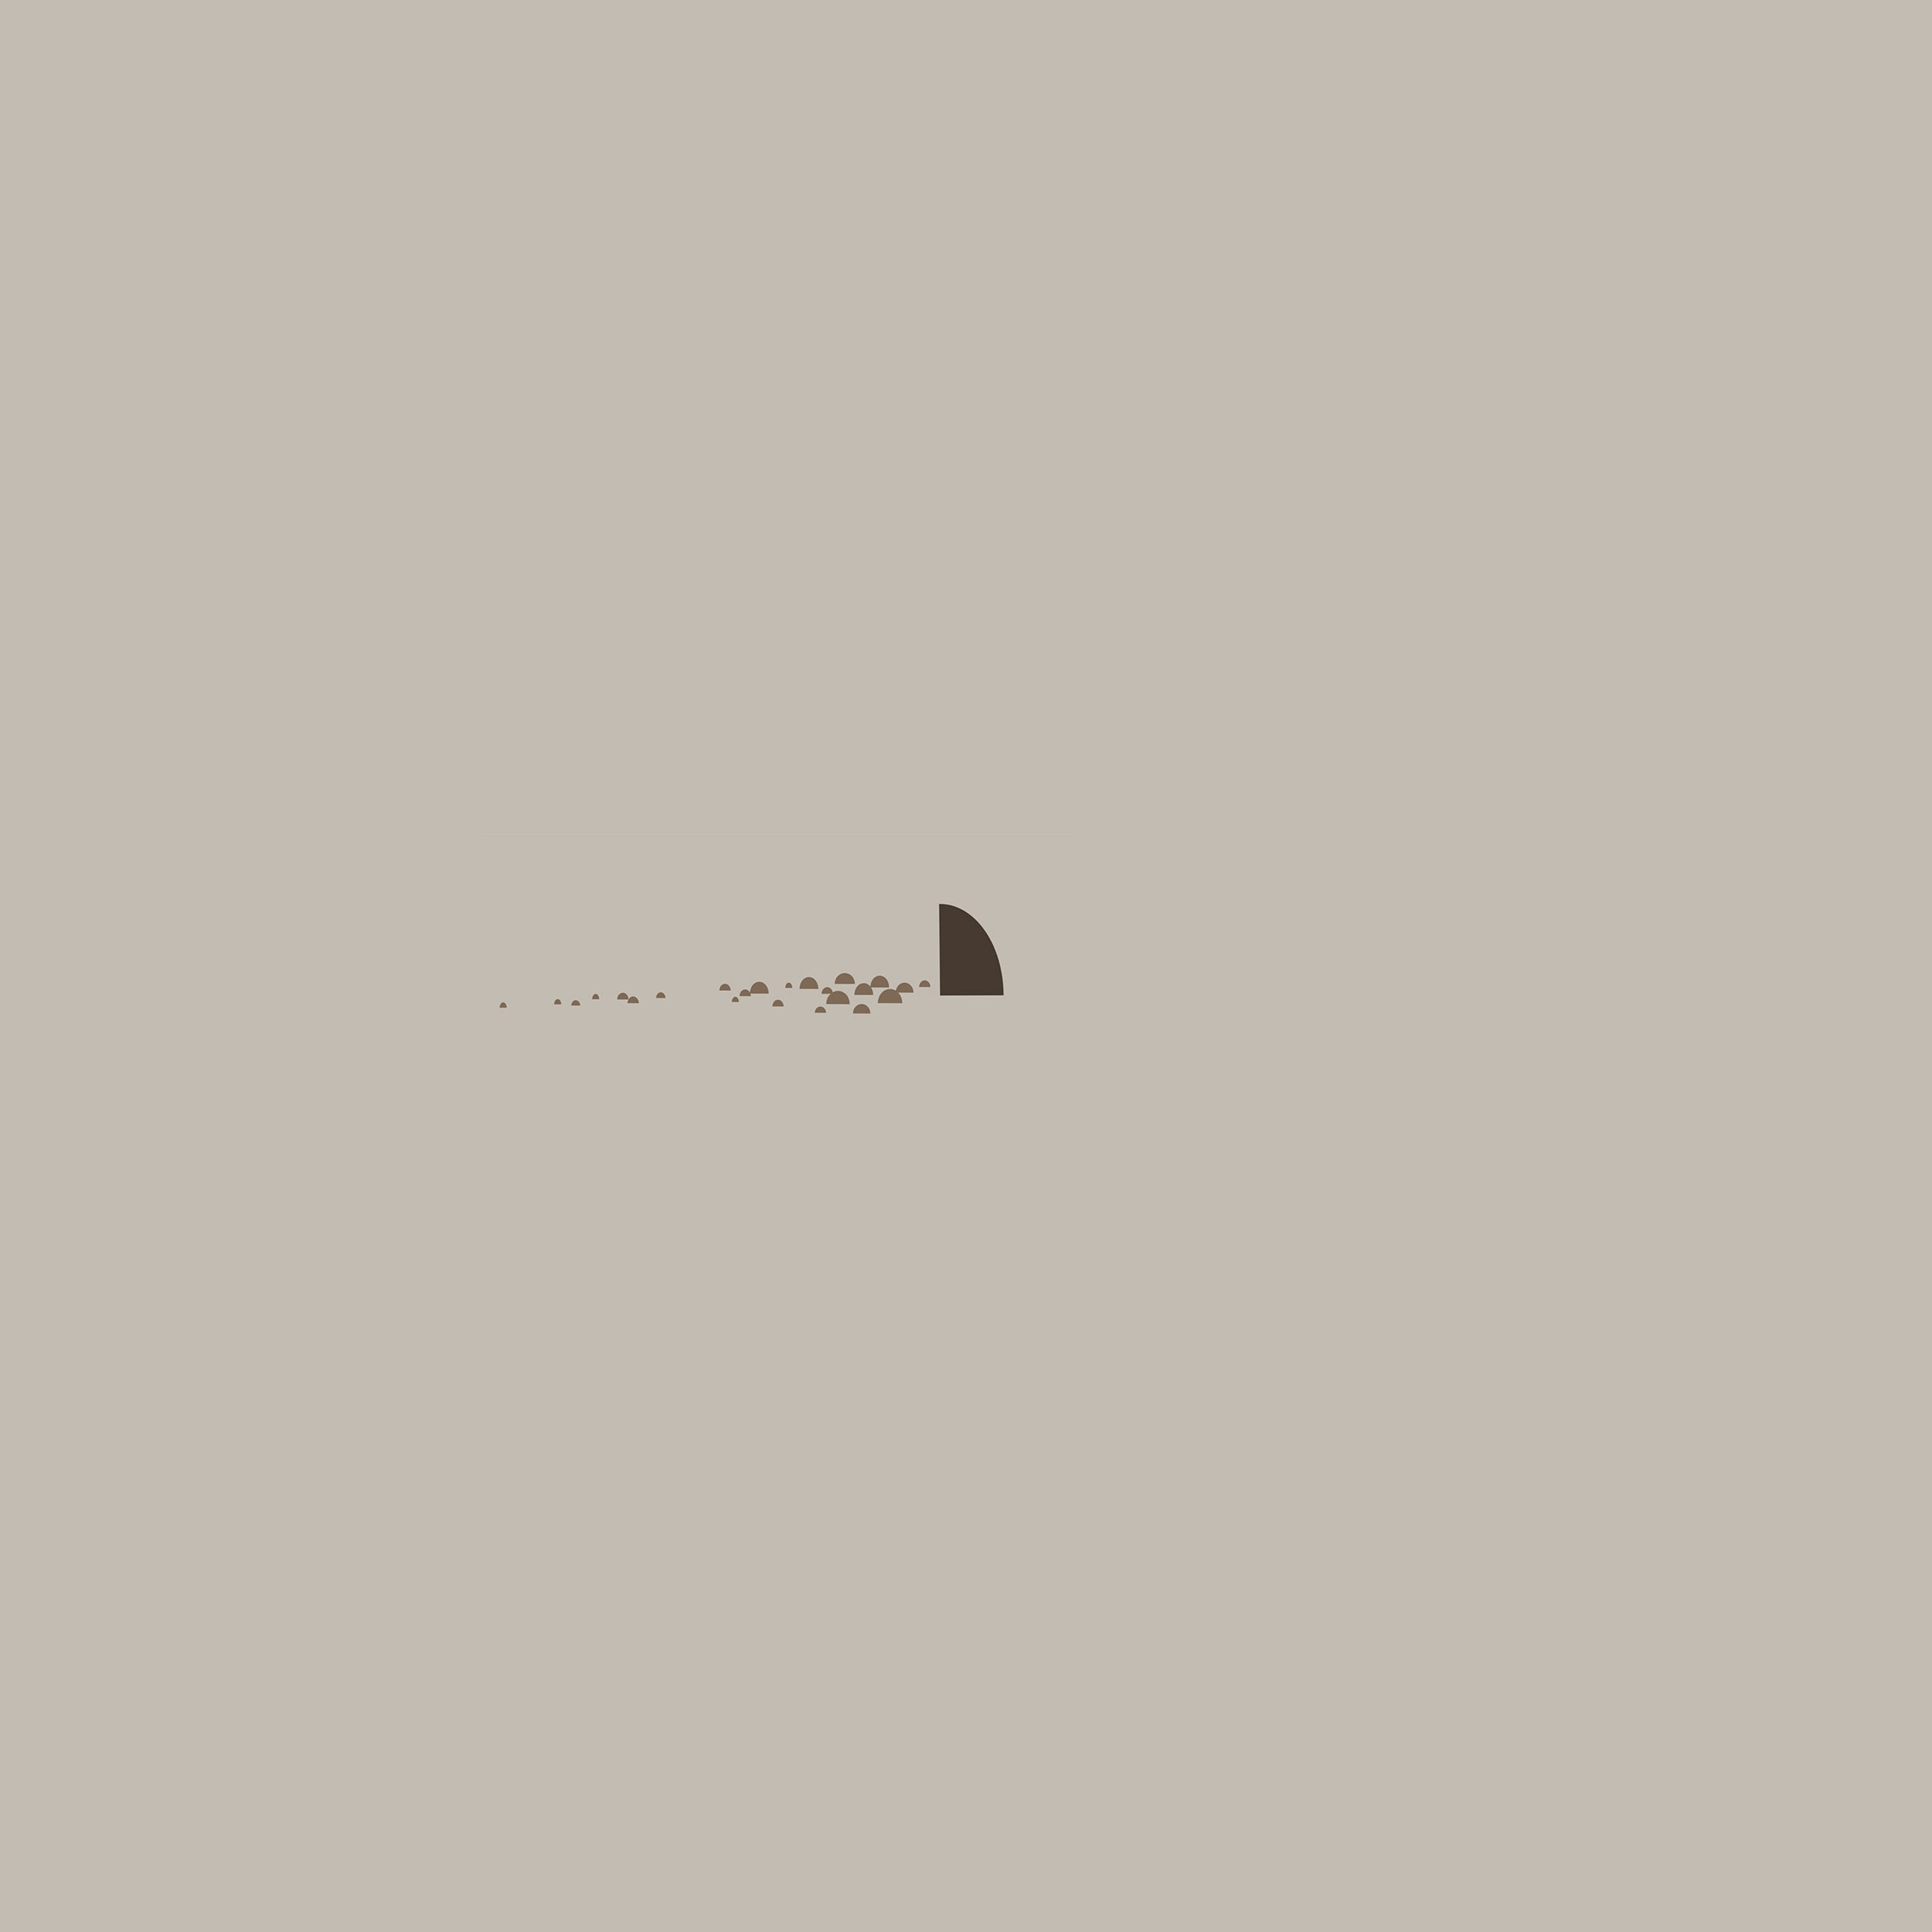 Android wallpaper. minimal simple shark sea illust art cute